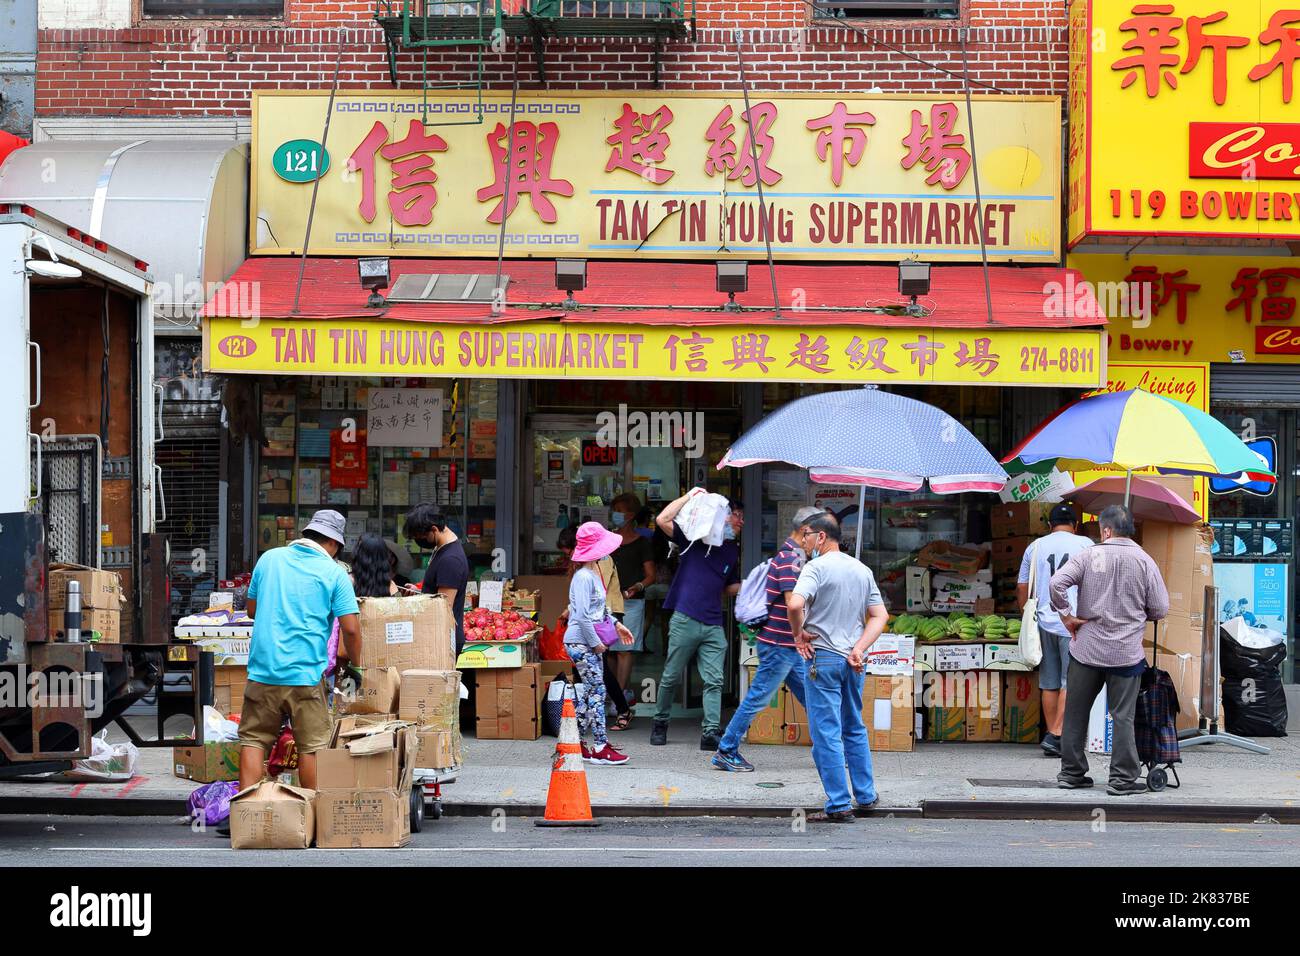 Tan Tin Hung Supermarket 信興超級市場, 121 Bowery, New York, New York, New York photo d'une épicerie d'Asie du Sud-est dans le quartier chinois de Manhattan. Banque D'Images